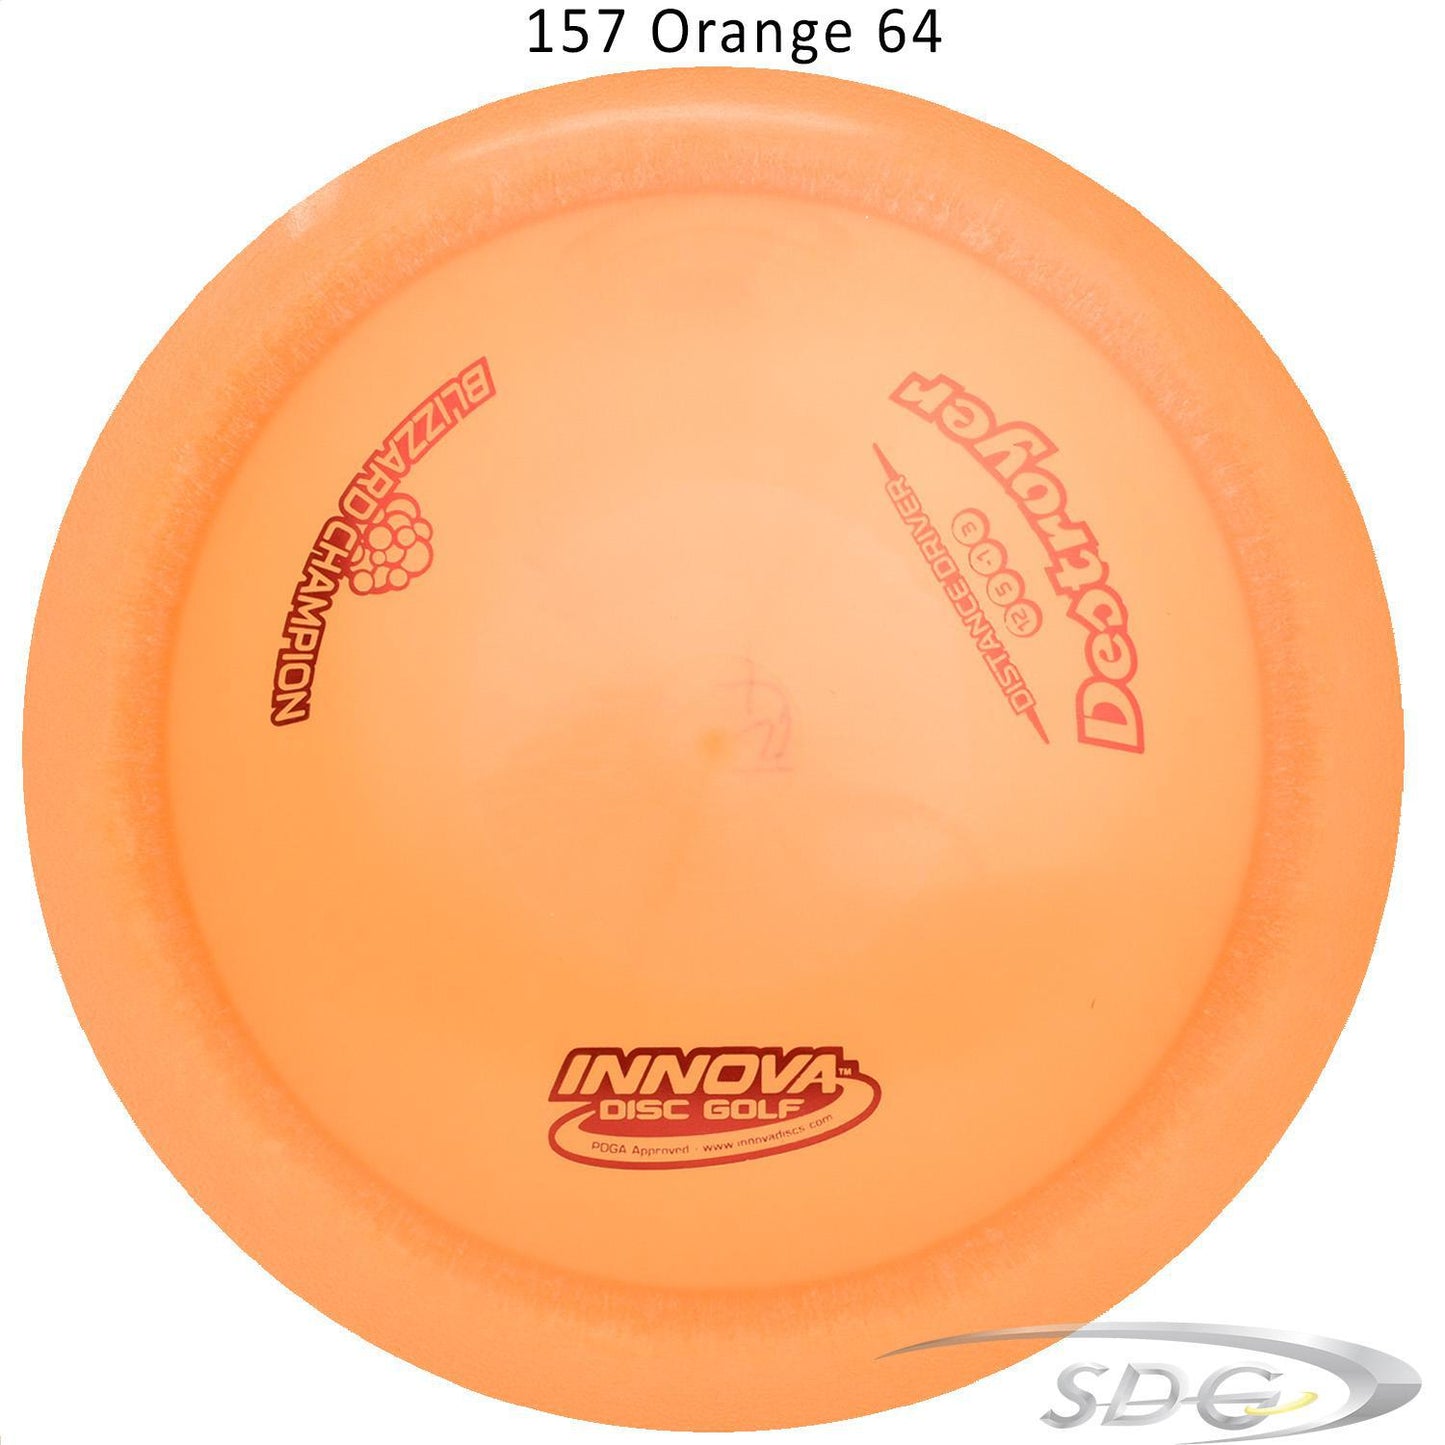 innova-blizzard-champion-destroyer-disc-golf-distance-driver 157 Orange 64